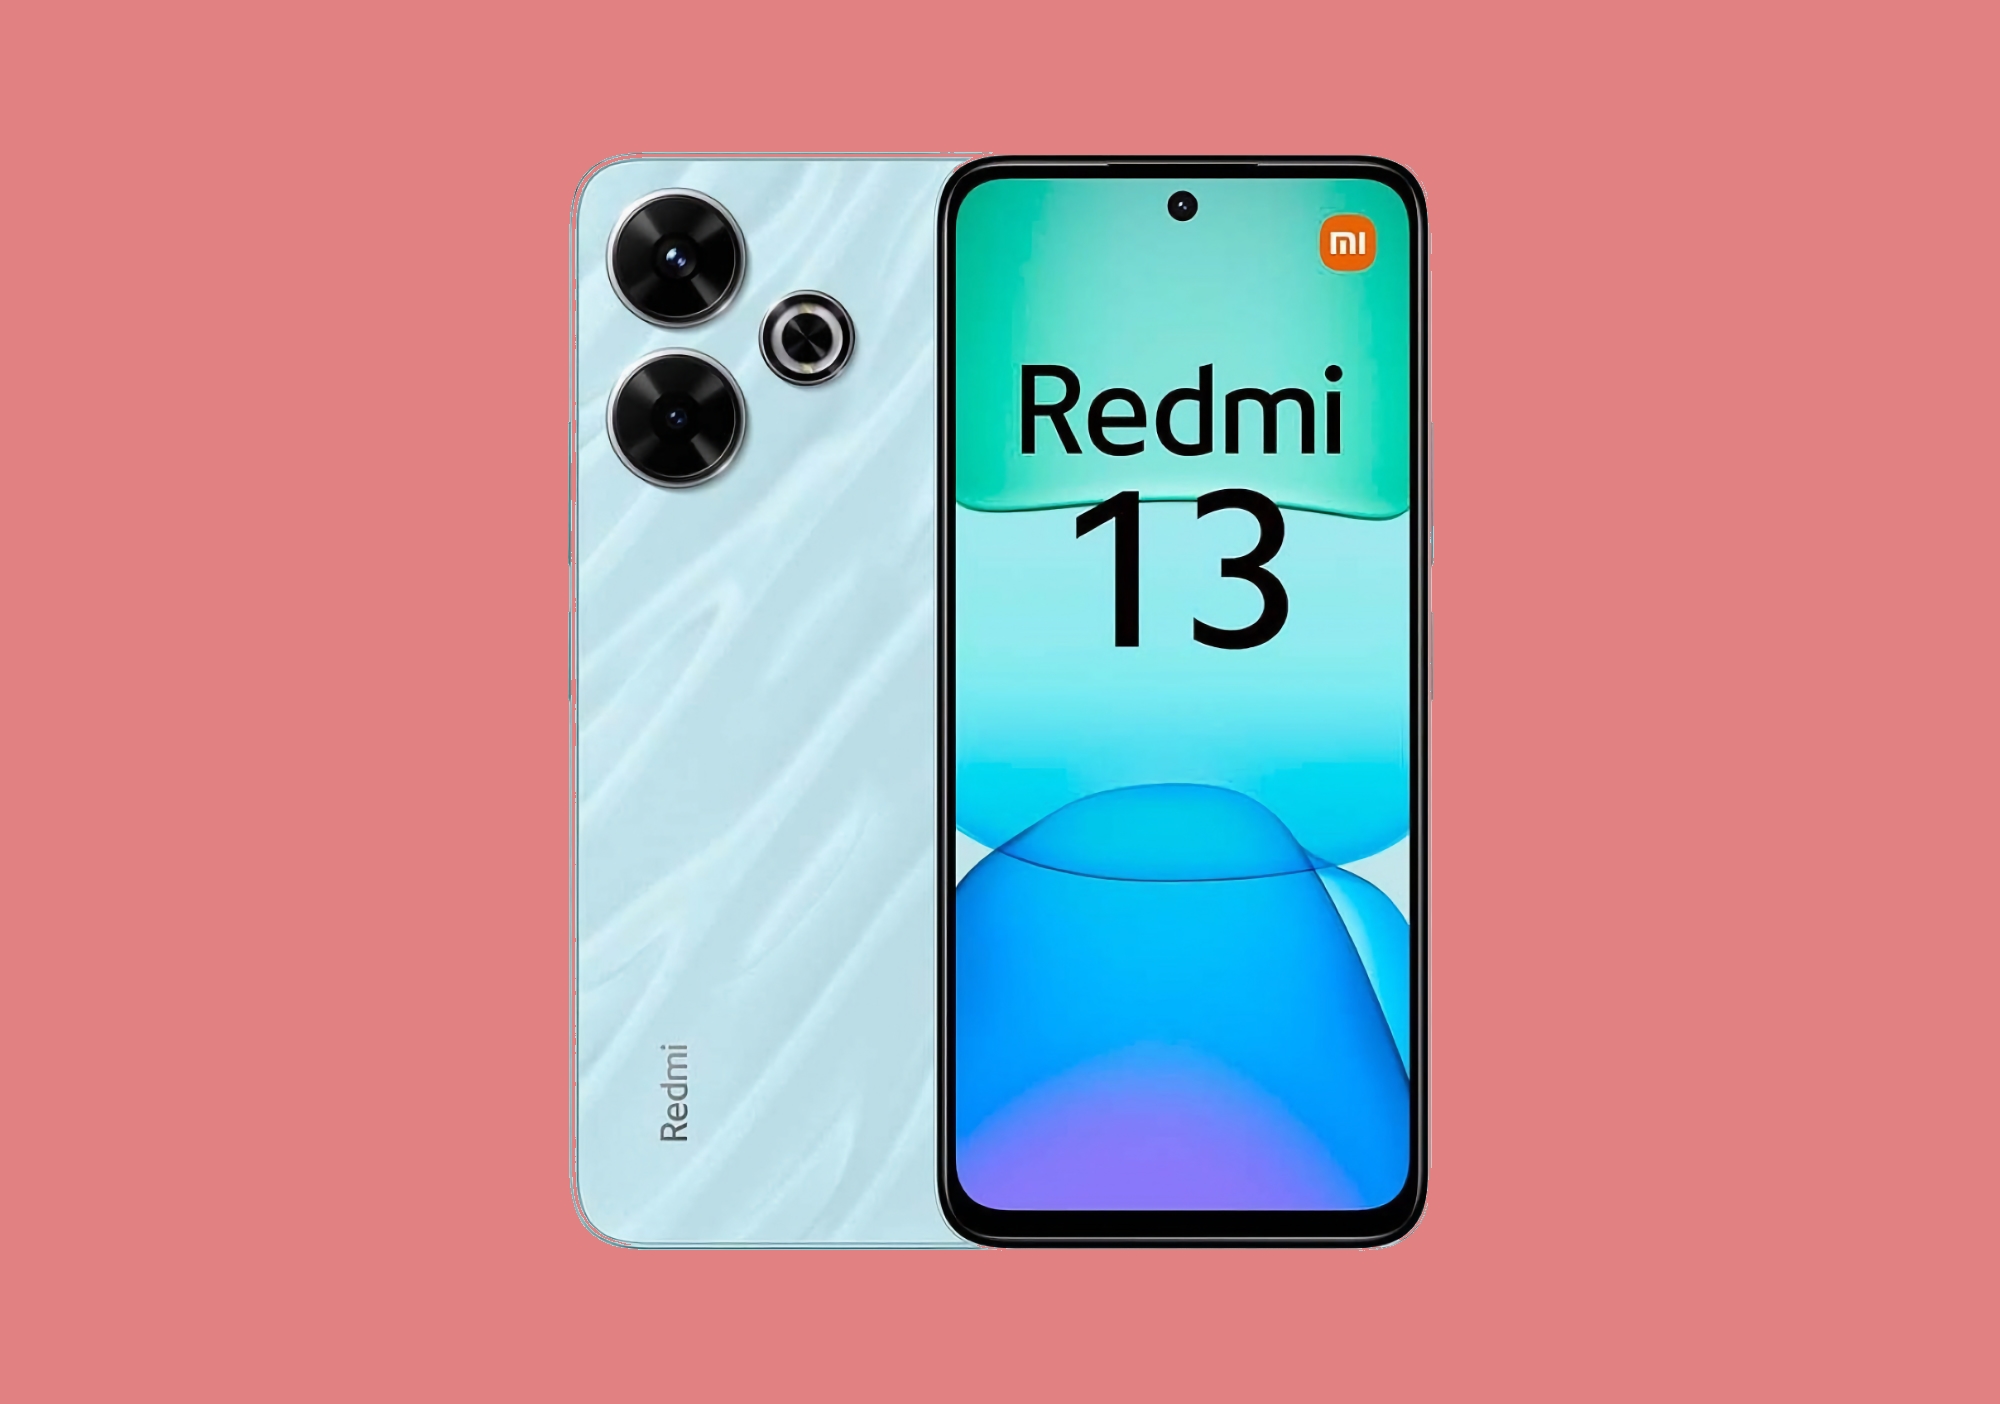 Xiaomi hat das Redmi 13 4G mit MediaTek Helio G91 Ultra Chip und einer 108 MP Kamera enthüllt